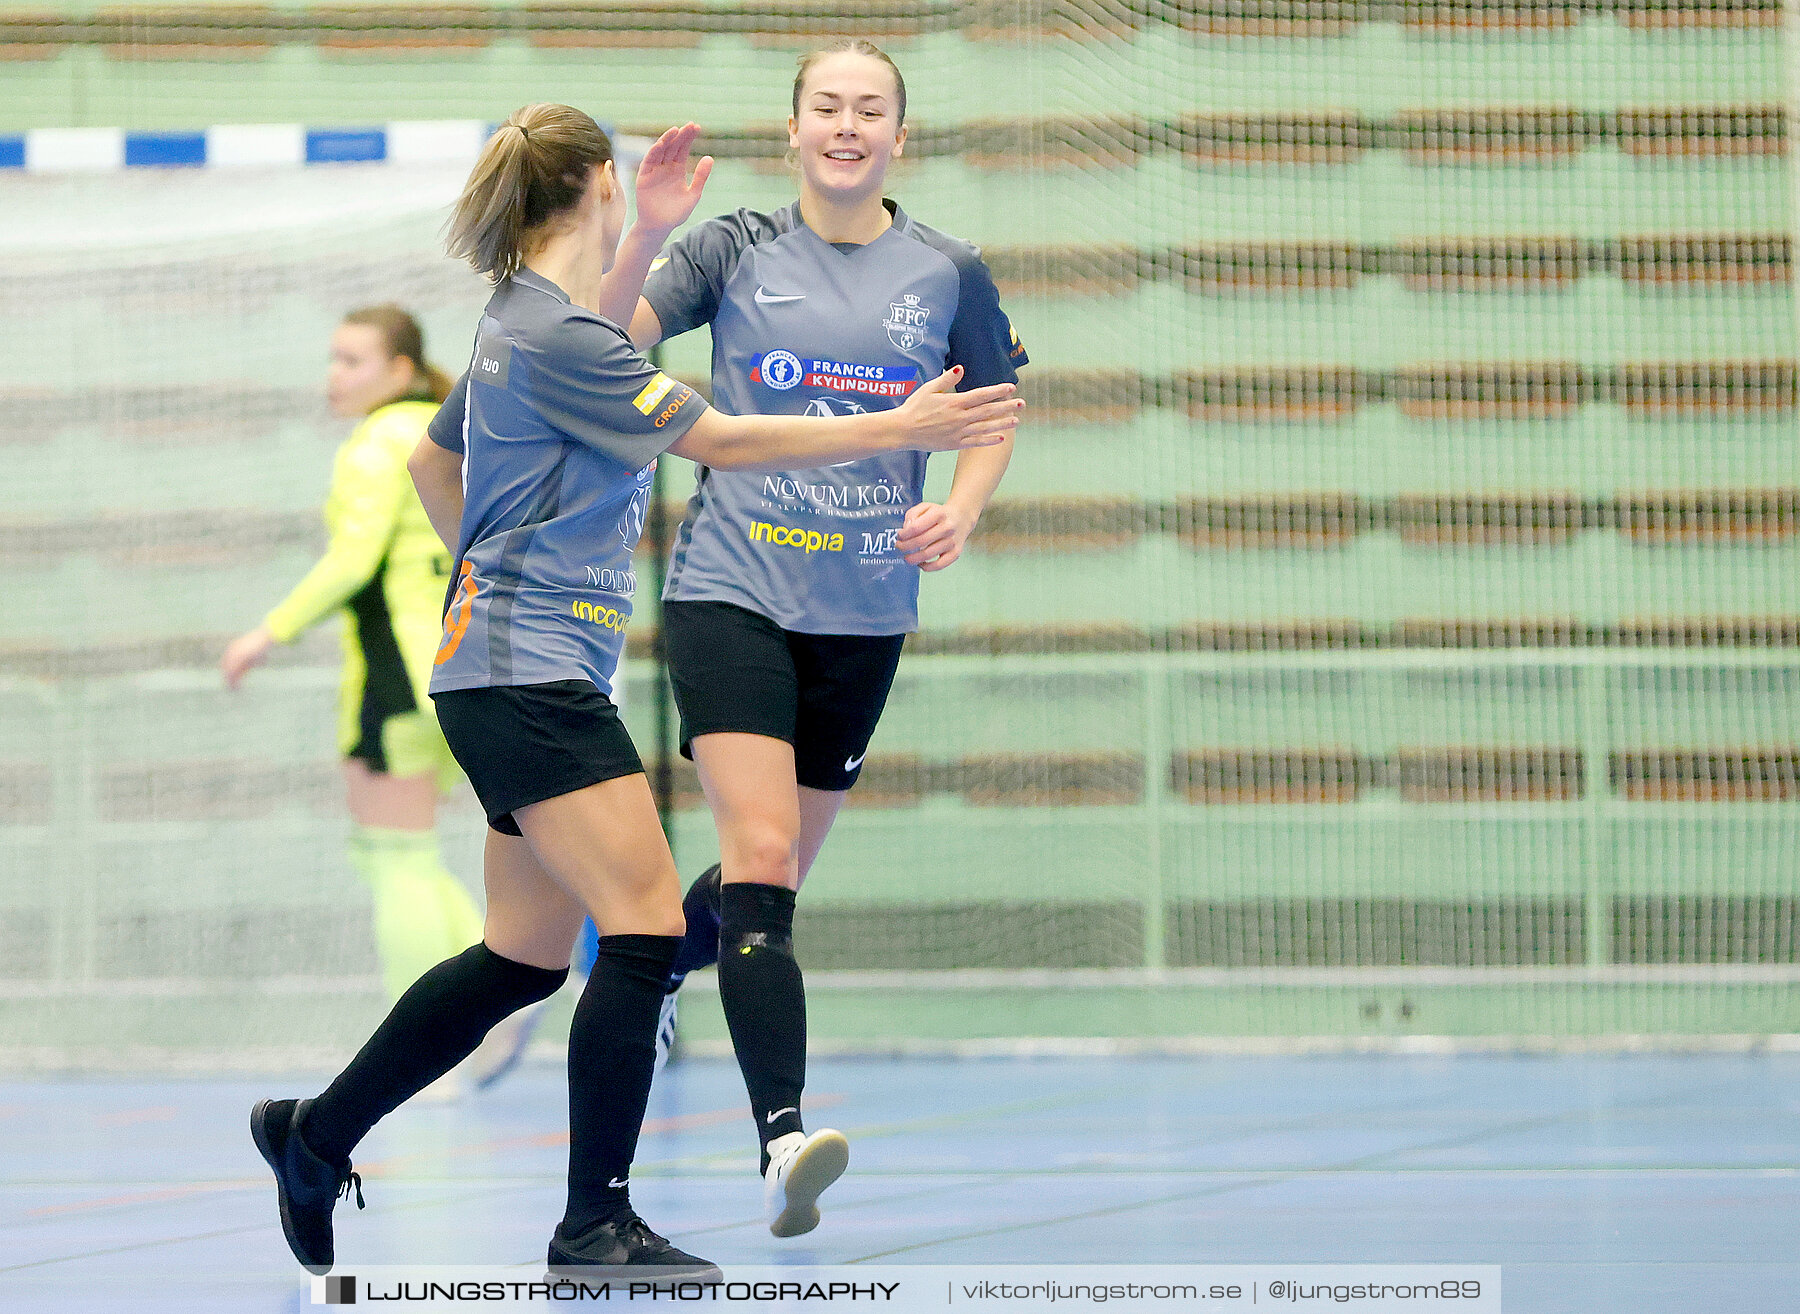 Skövde Futsalcup 2022 Damer Falköping Futsal Club-IFK Wreta Kloster 2 4-0,dam,Arena Skövde,Skövde,Sverige,Futsal,,2022,297592